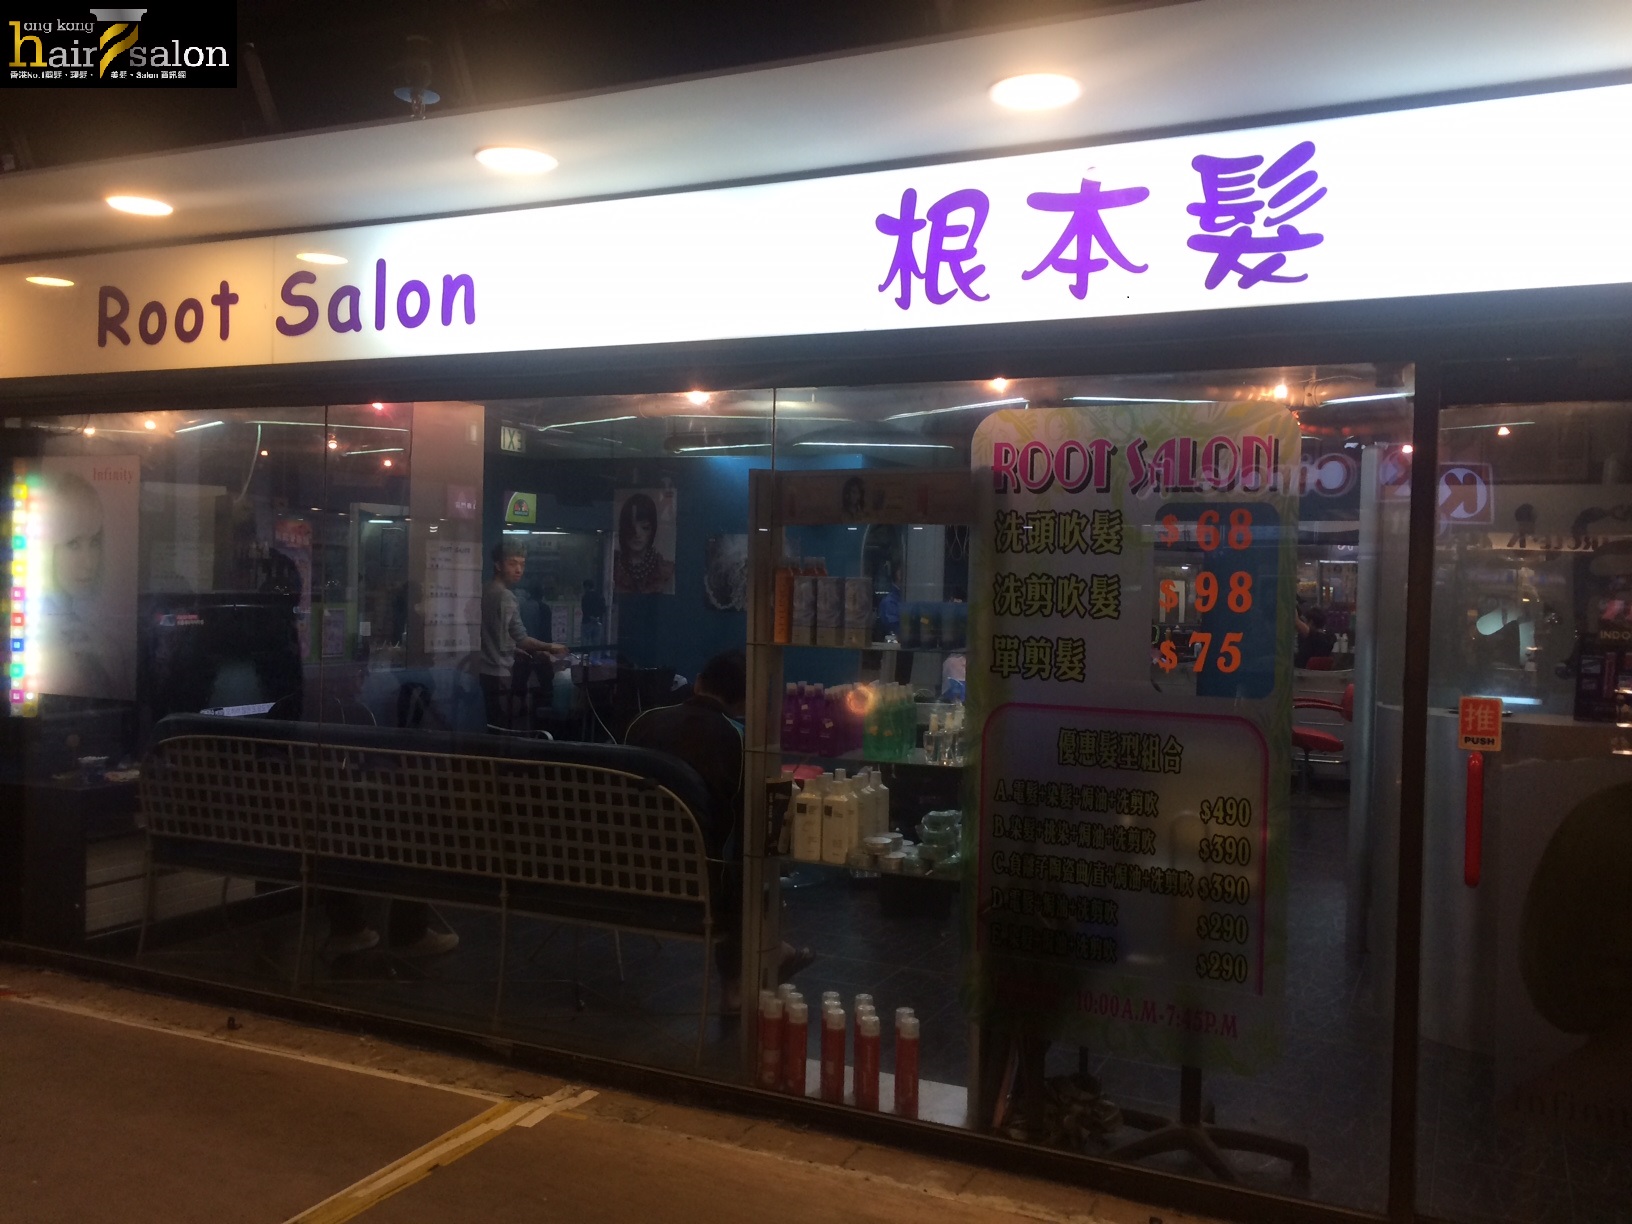 髮型屋: Root Salon 根本髮